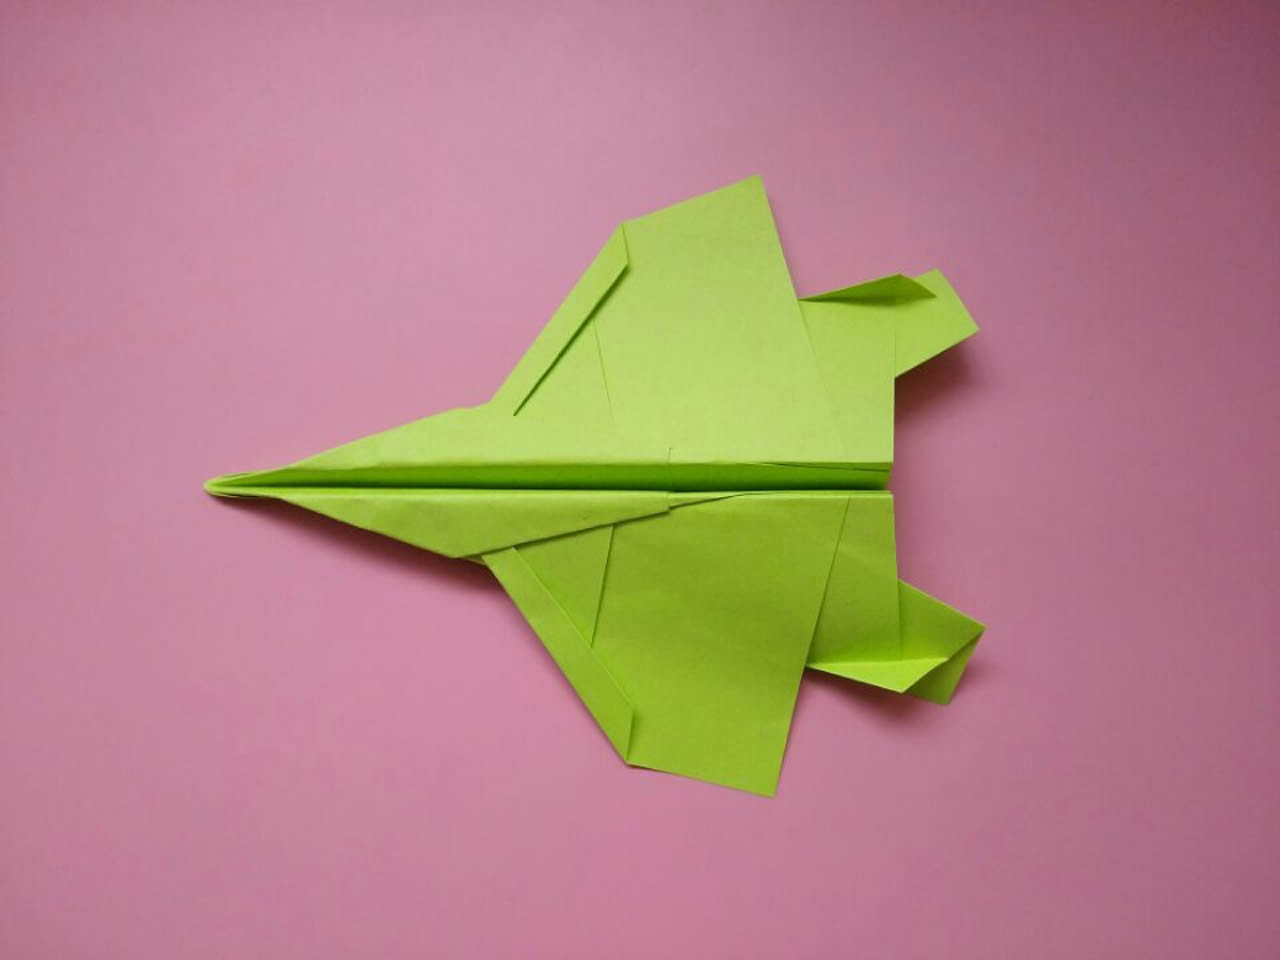 很好玩的f15战斗纸飞机折纸,只要几步就做好,儿童益智手工折纸